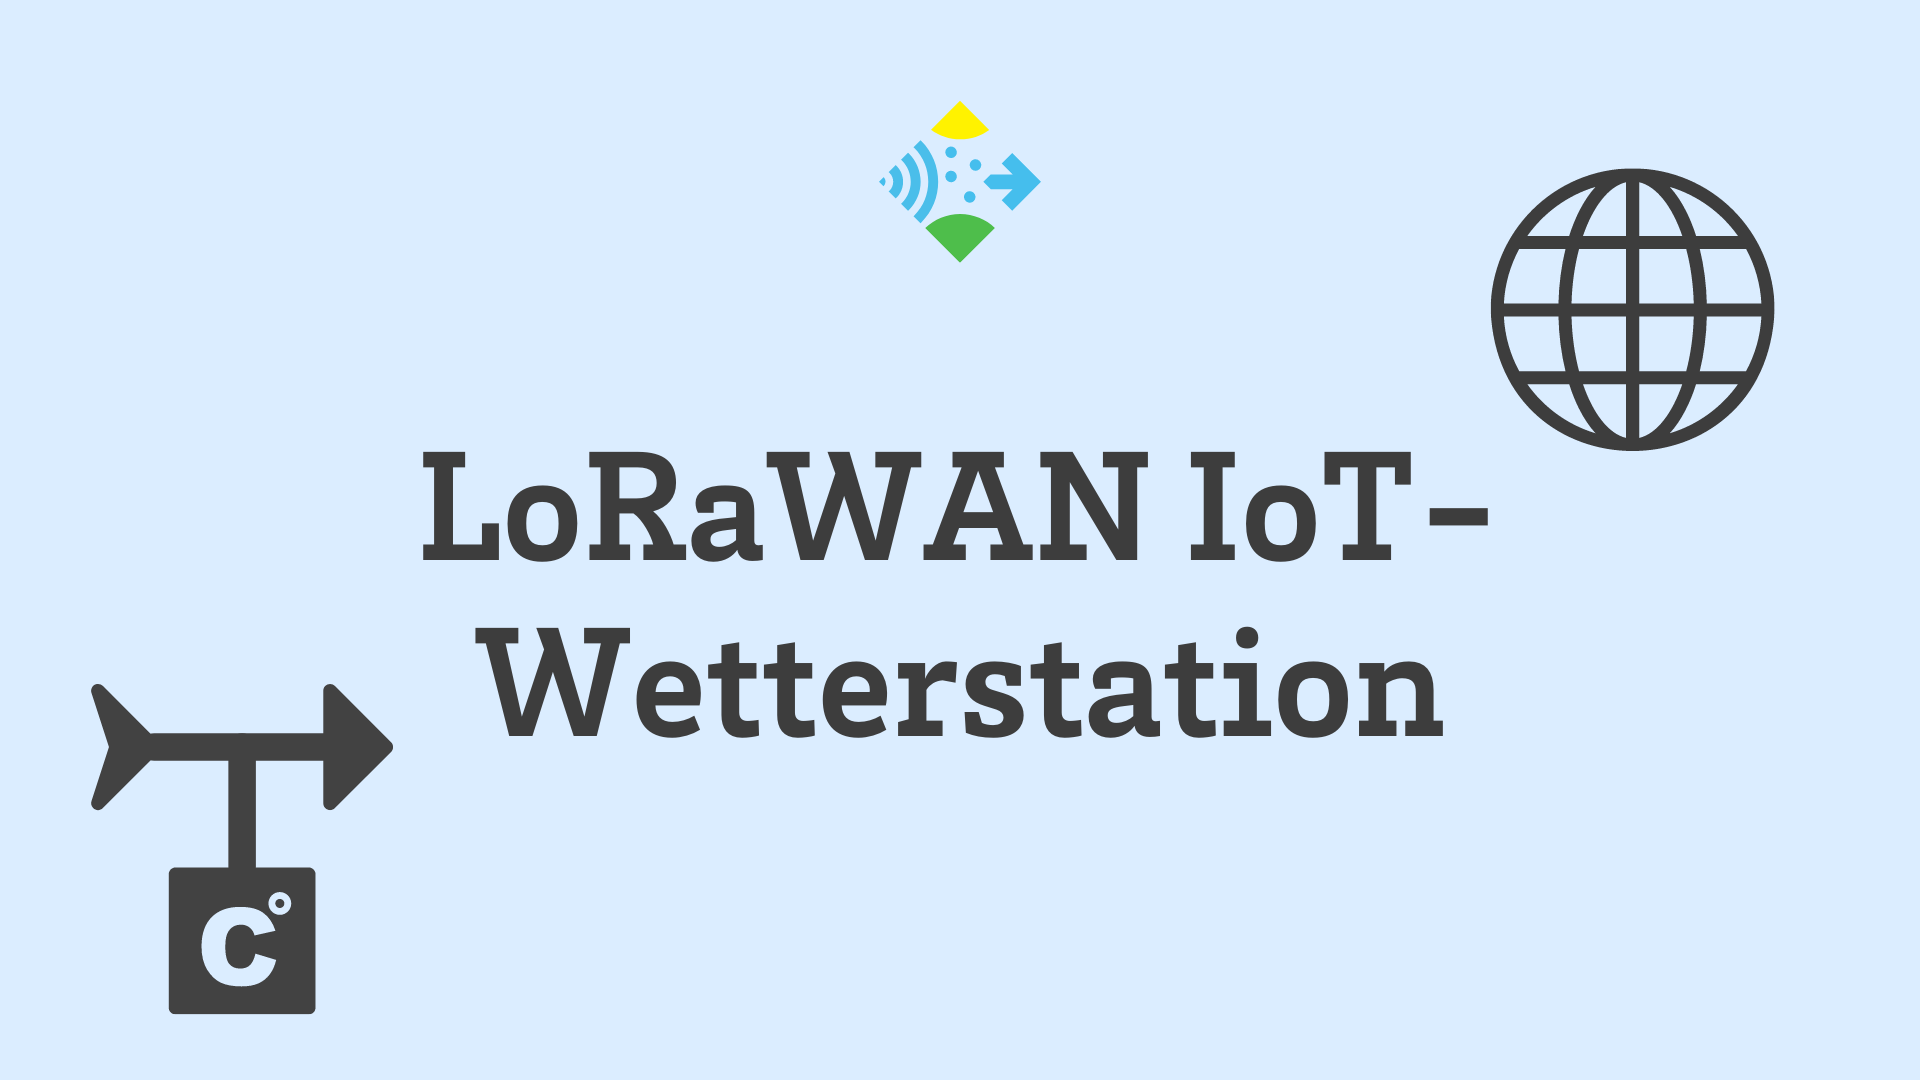 Lorawan Iot Weatherstation - Logo